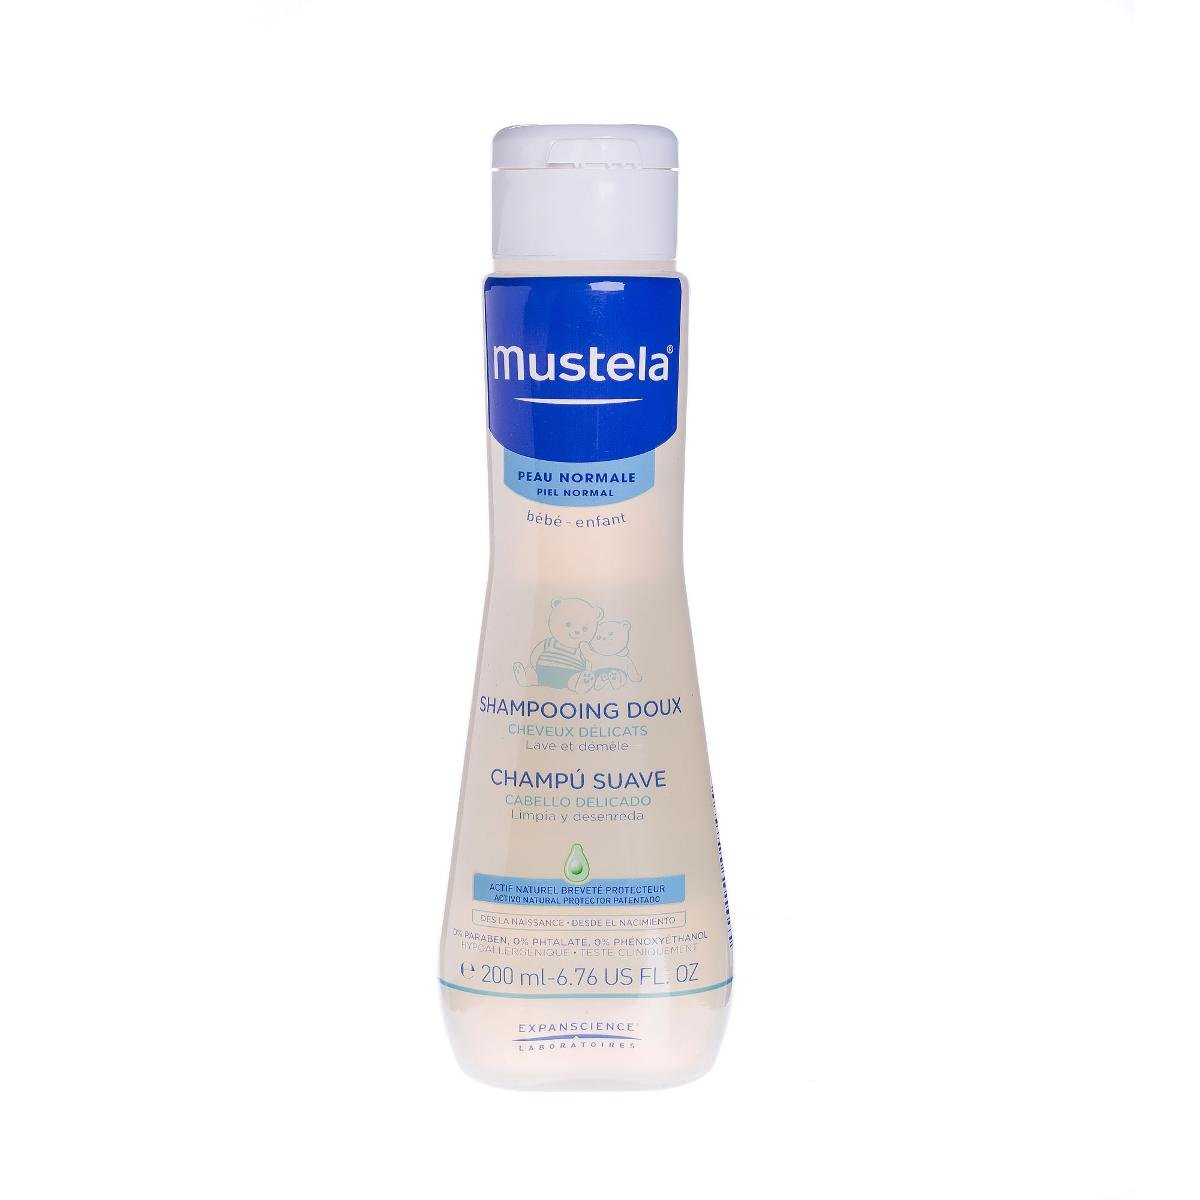 Mustela EXPANSCIENCE delikatny szampon dla dzieci z Avocado Perseose 200 ml